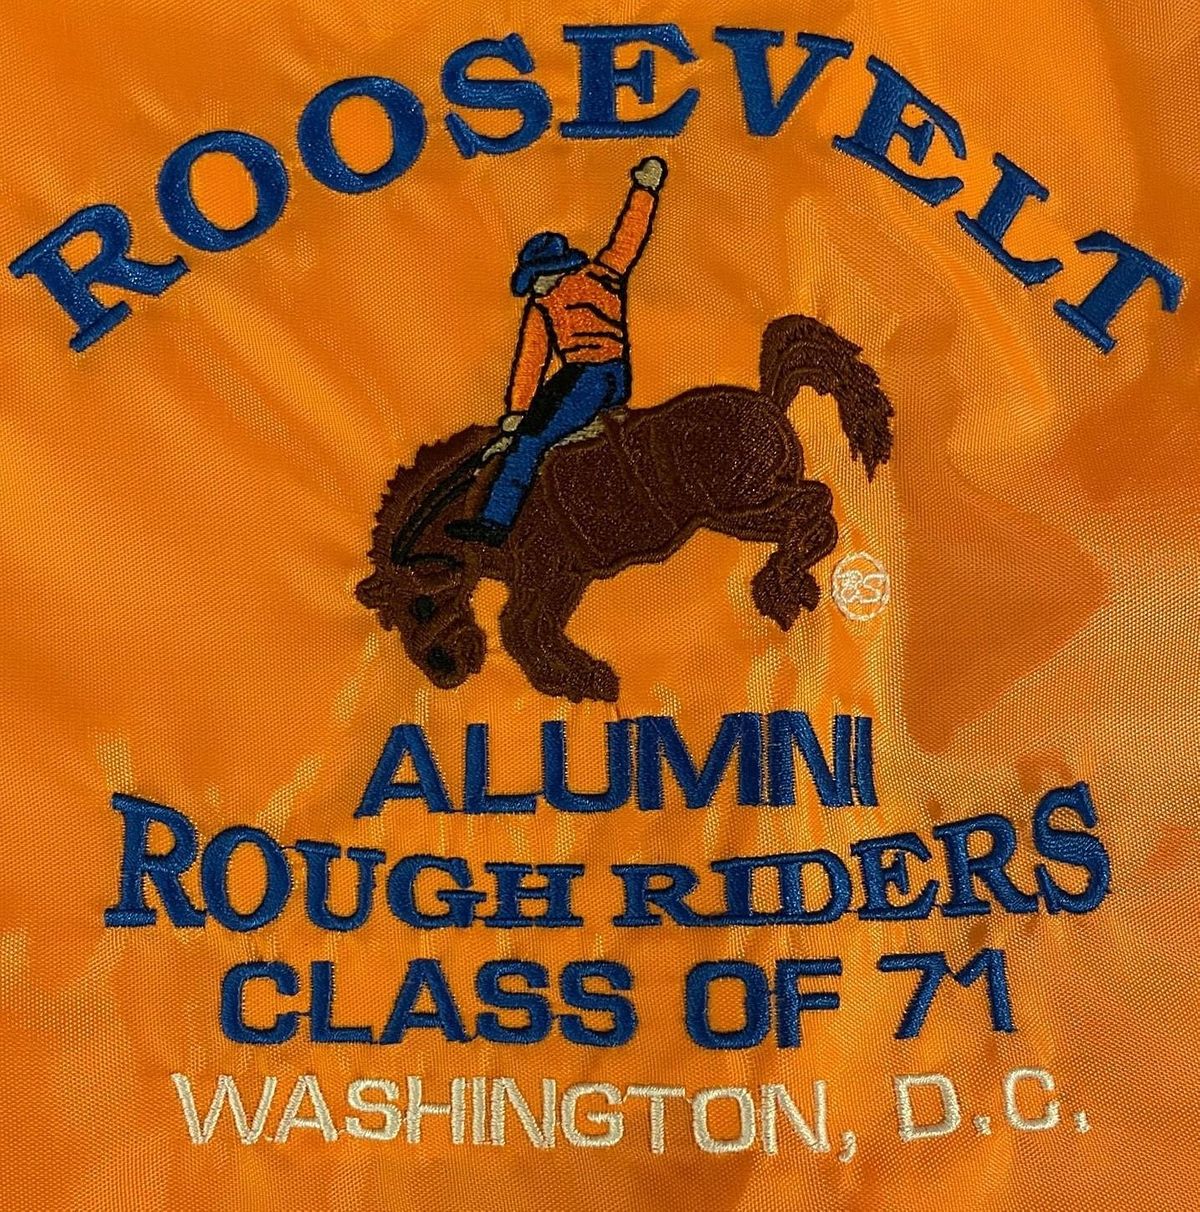 Dinner Dance - Theodore Roosevelt HS Class of 1971 50th Reunion